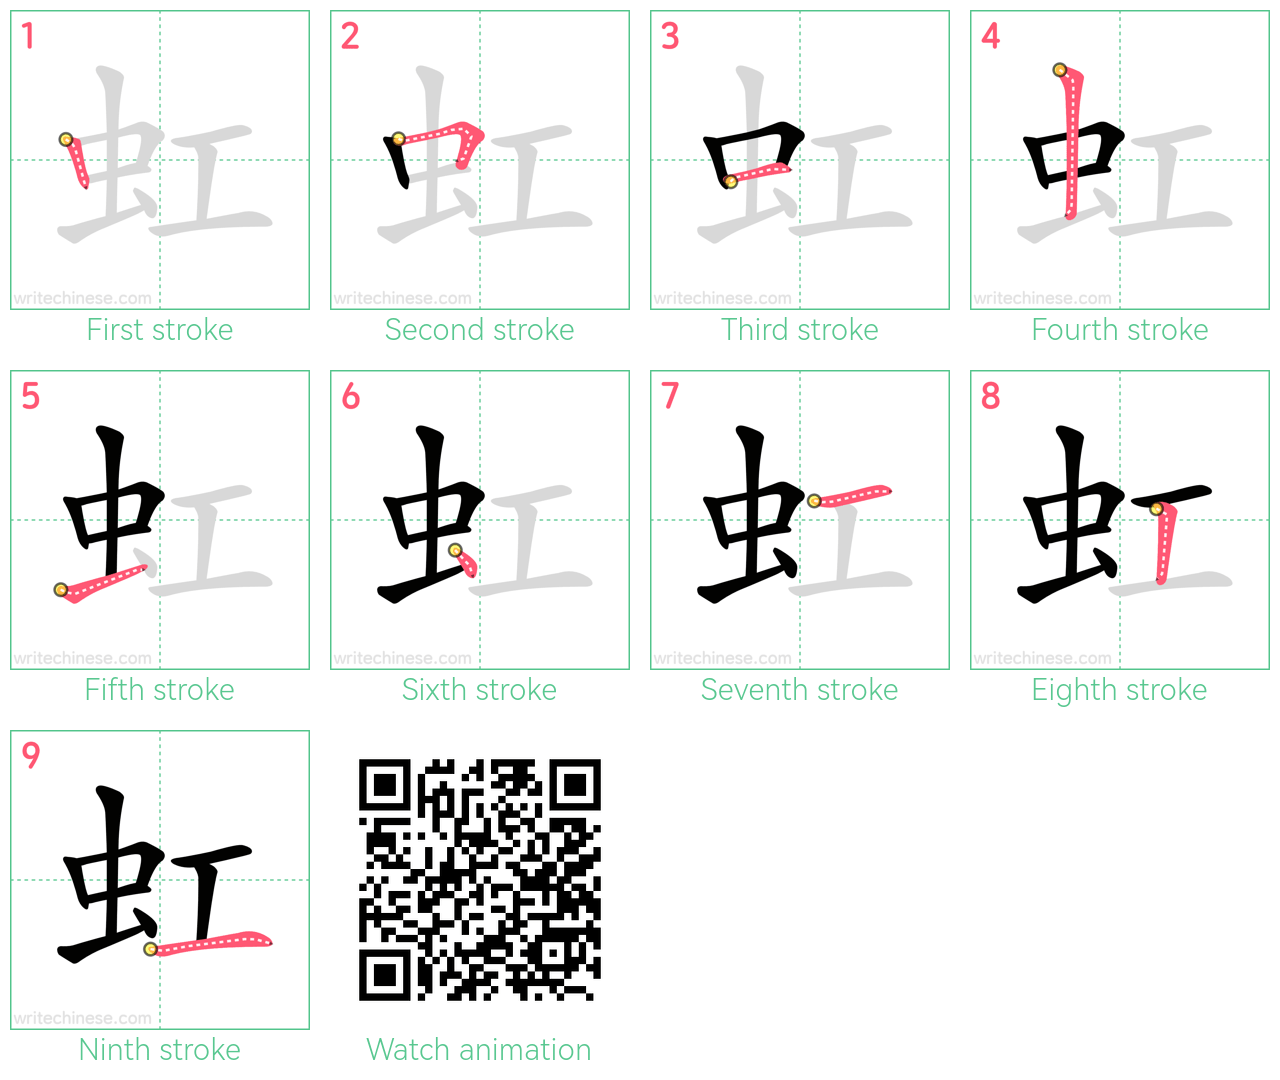 虹 step-by-step stroke order diagrams